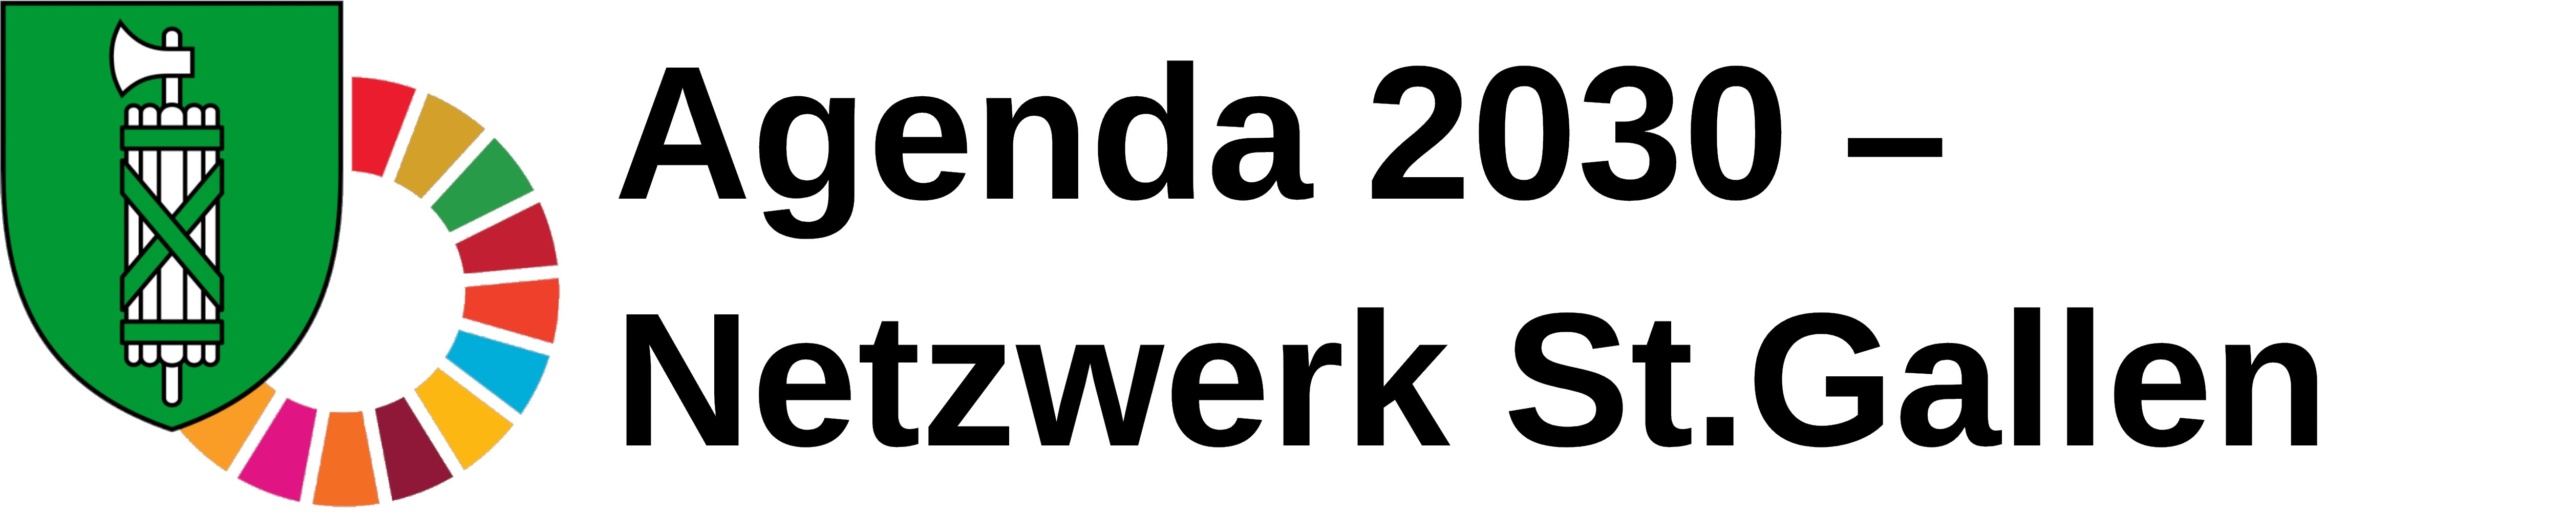 Agenda 2030 – Netzwerk St. Gallen_weisserHintergrund